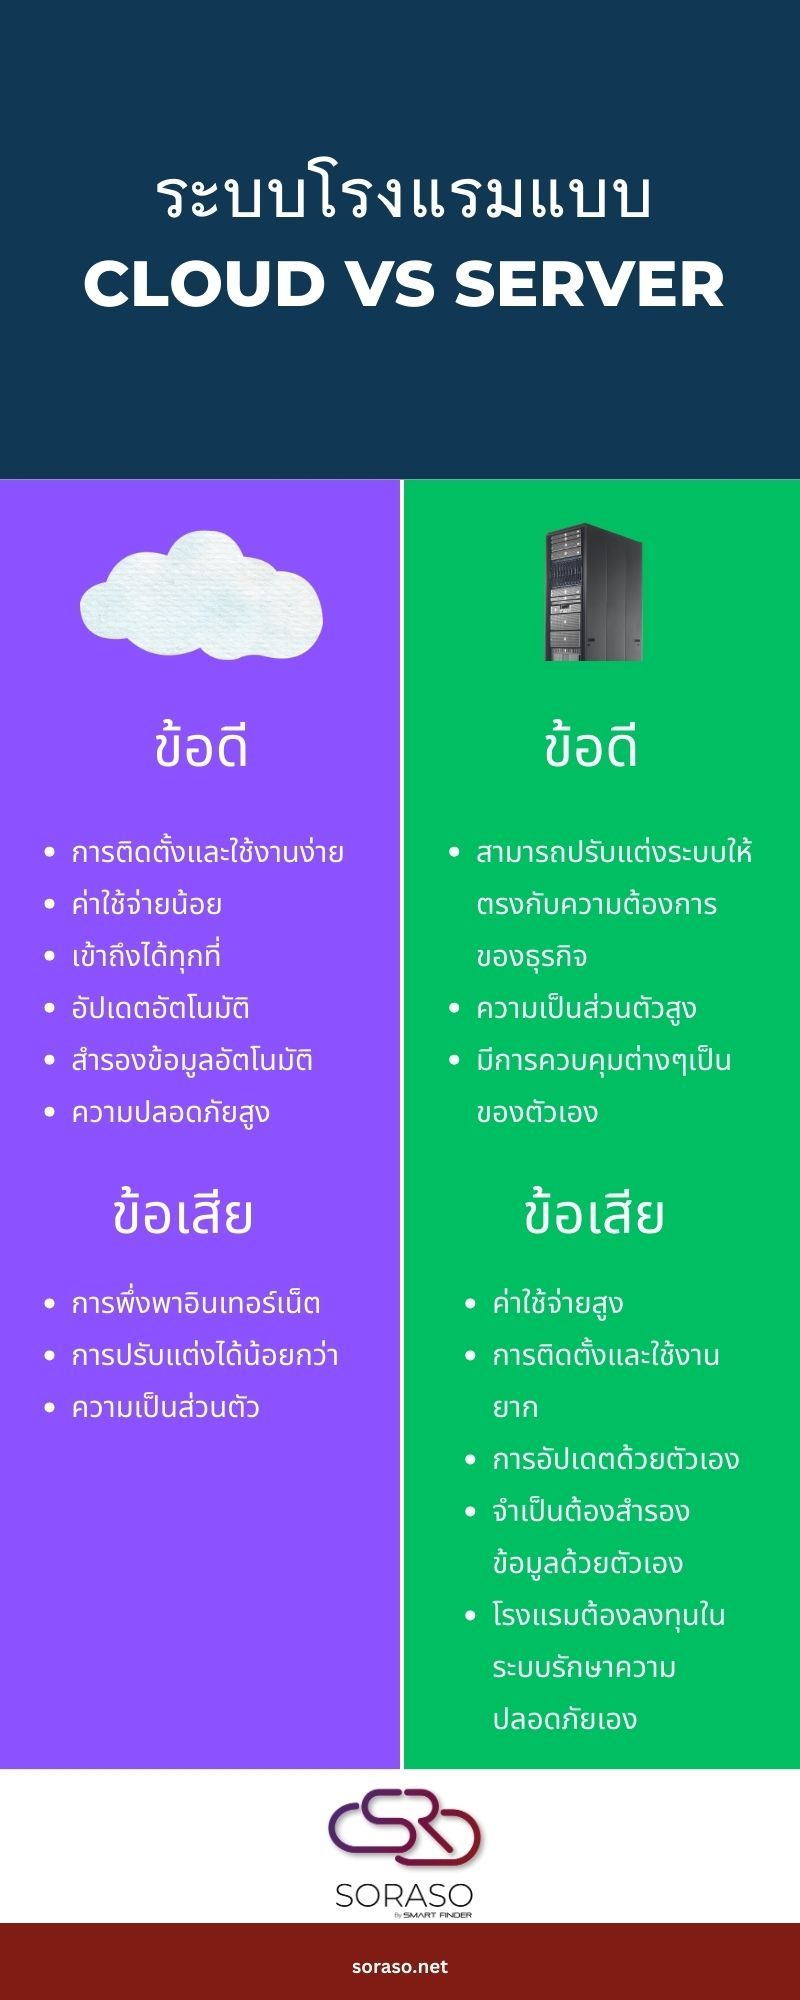 cloud-vs-server-infographic-soraso